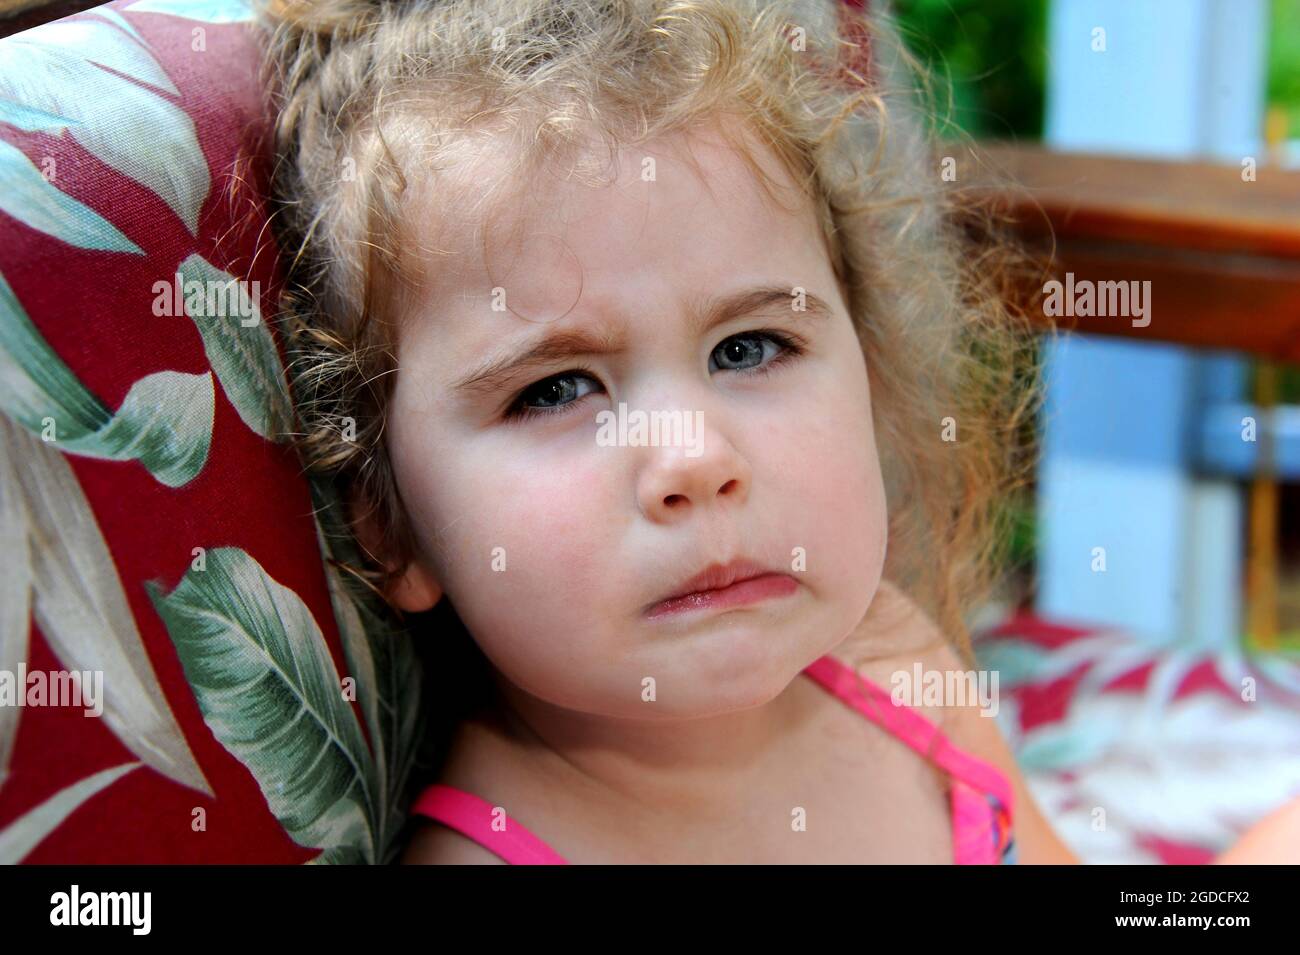 Das kleine Mädchen hat ihr Gesicht in einem Grind verdreht. Ihre Einstellung ist mürrisch und pingelig. Sie hat lockiges Haar. Stockfoto